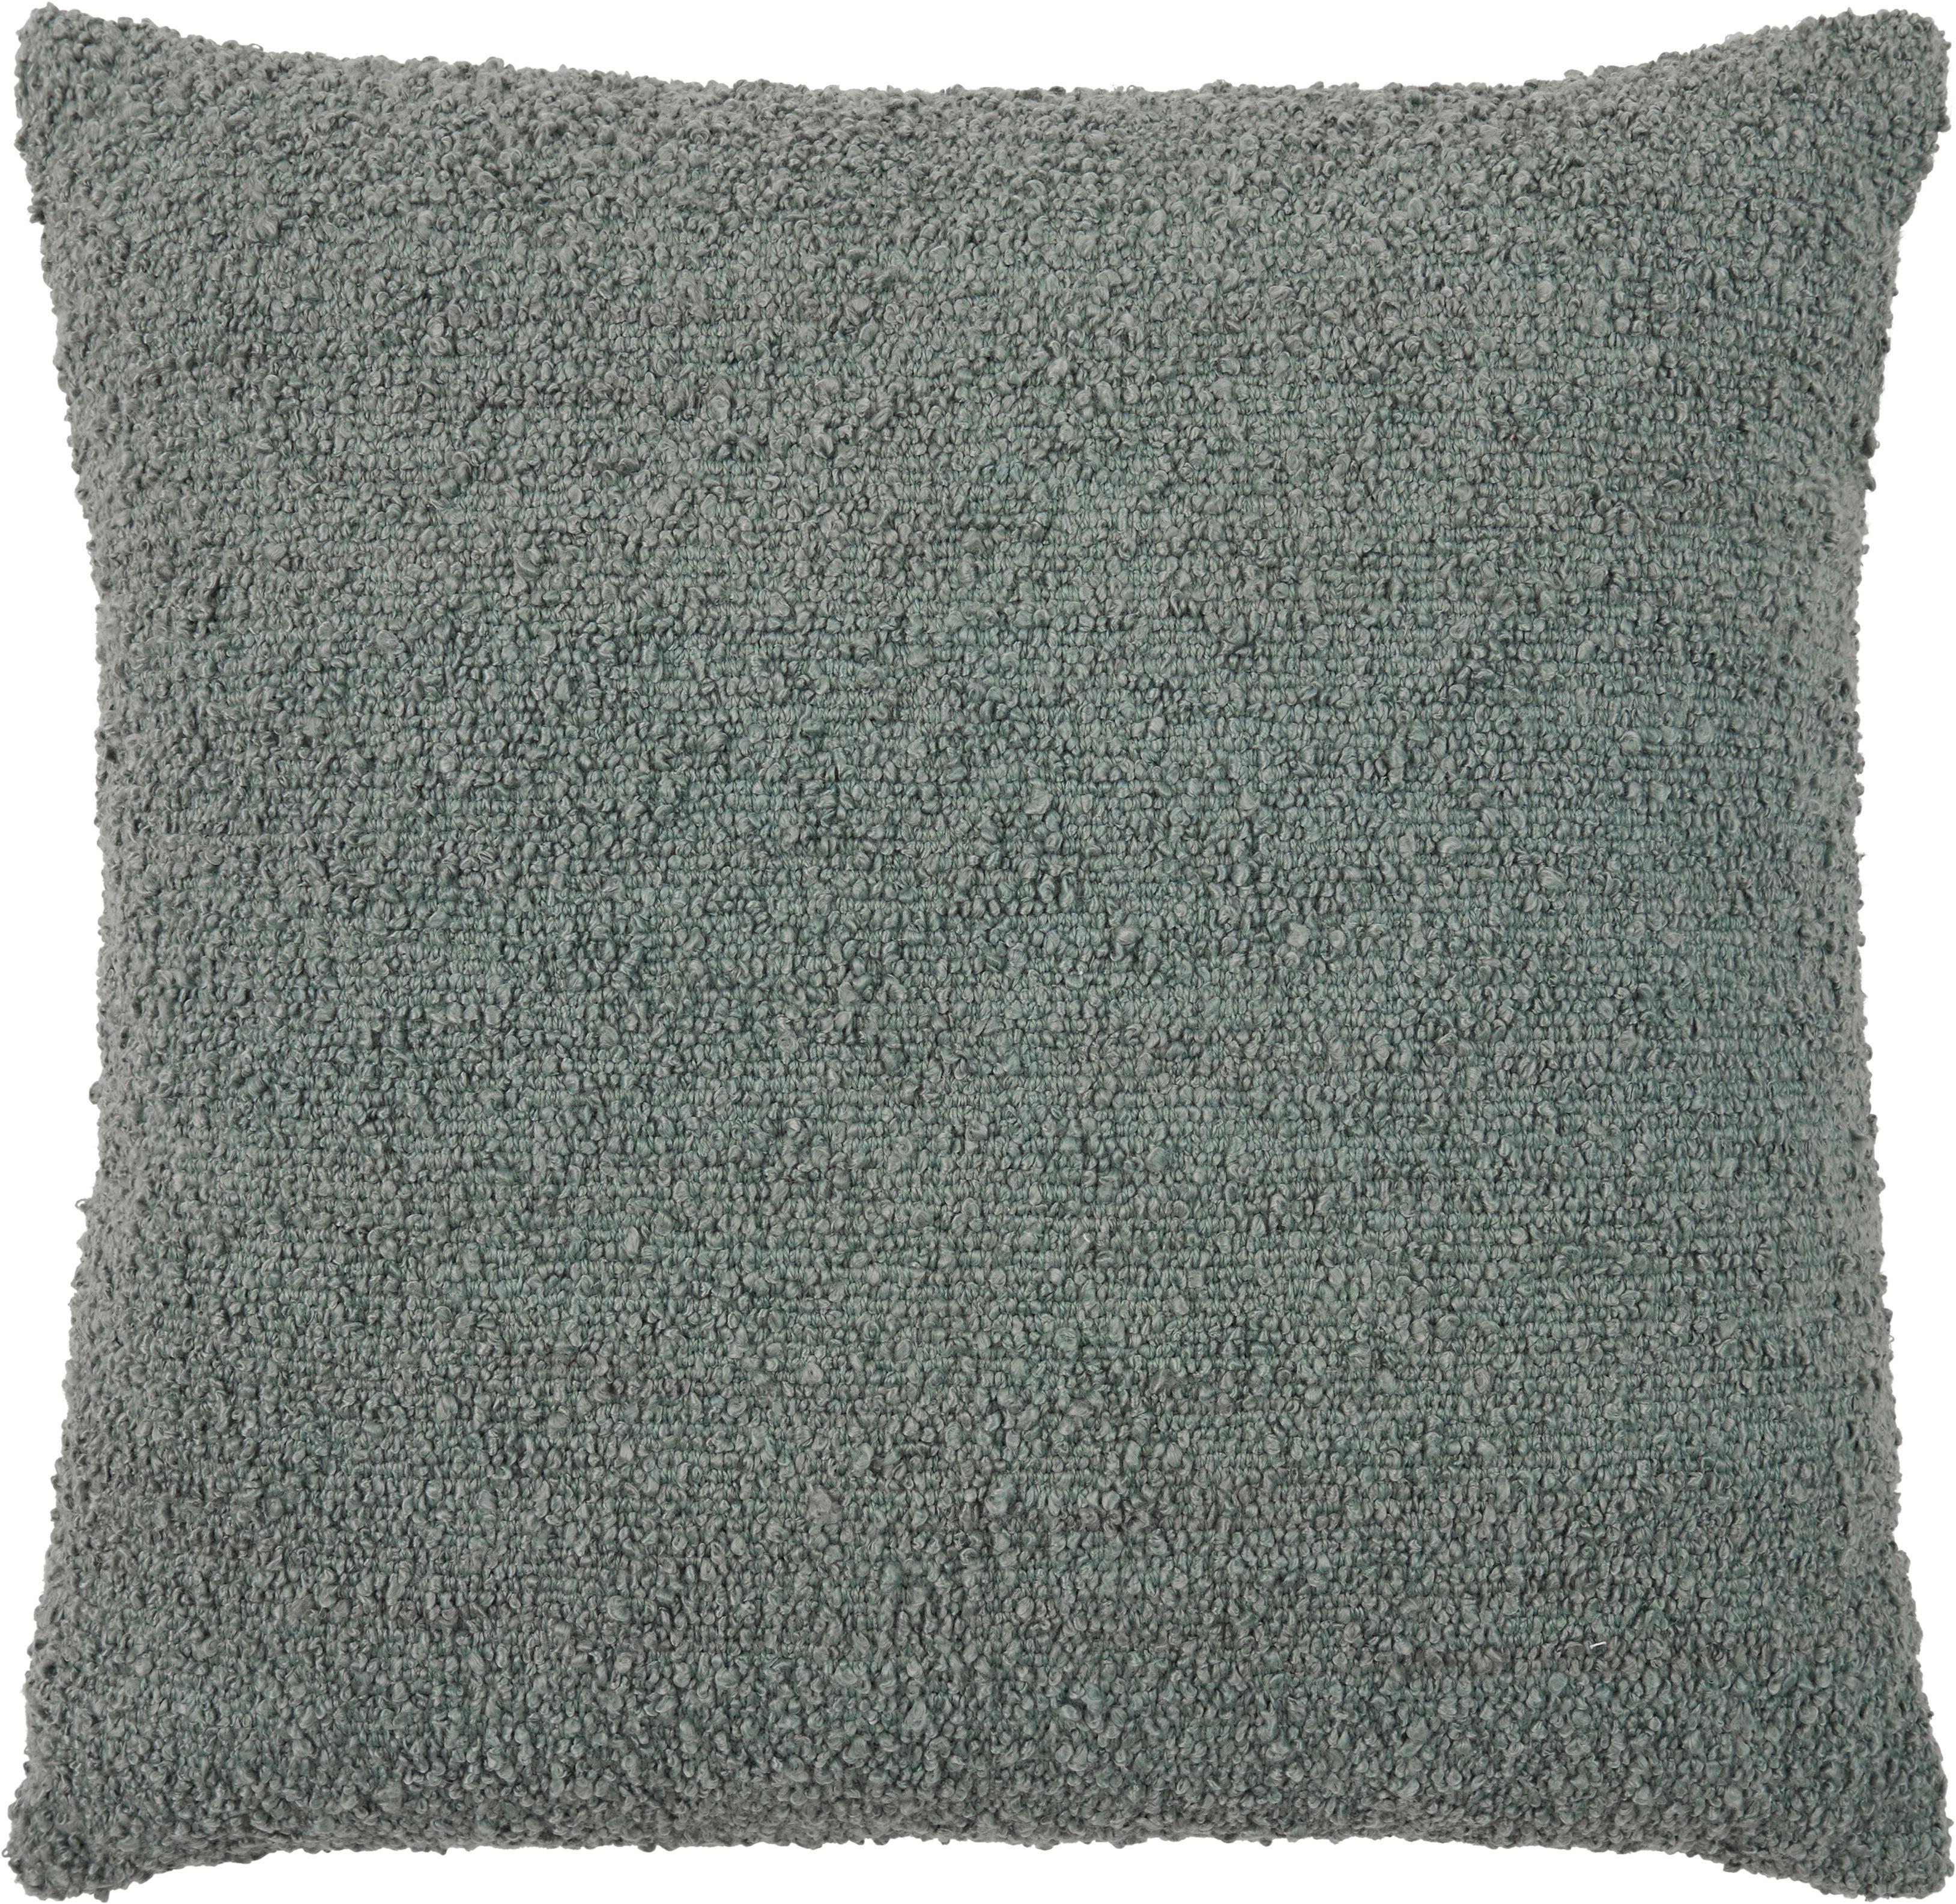 Zierkissen Boucle in Jadegrün ca. 45x45cm - Jadegrün, Konventionell, Textil (45/45cm) - Modern Living